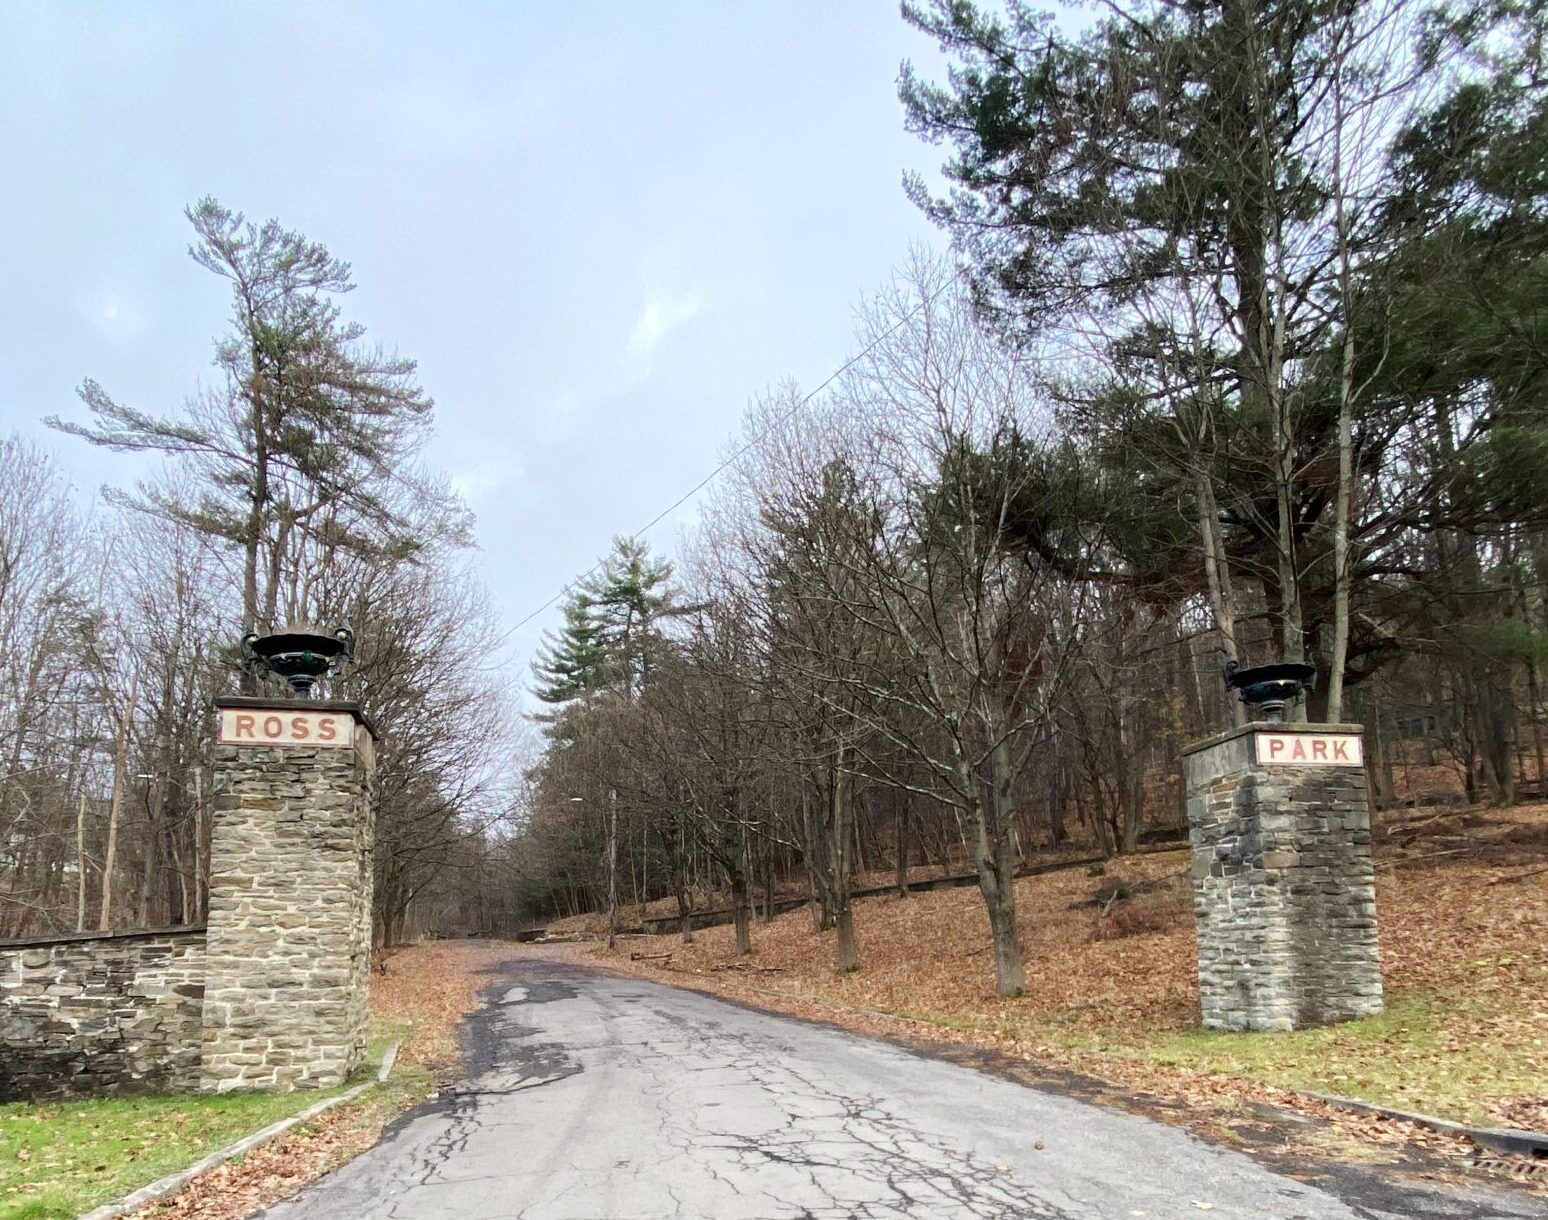 Gate at Ross Park, Binghamton, NY.